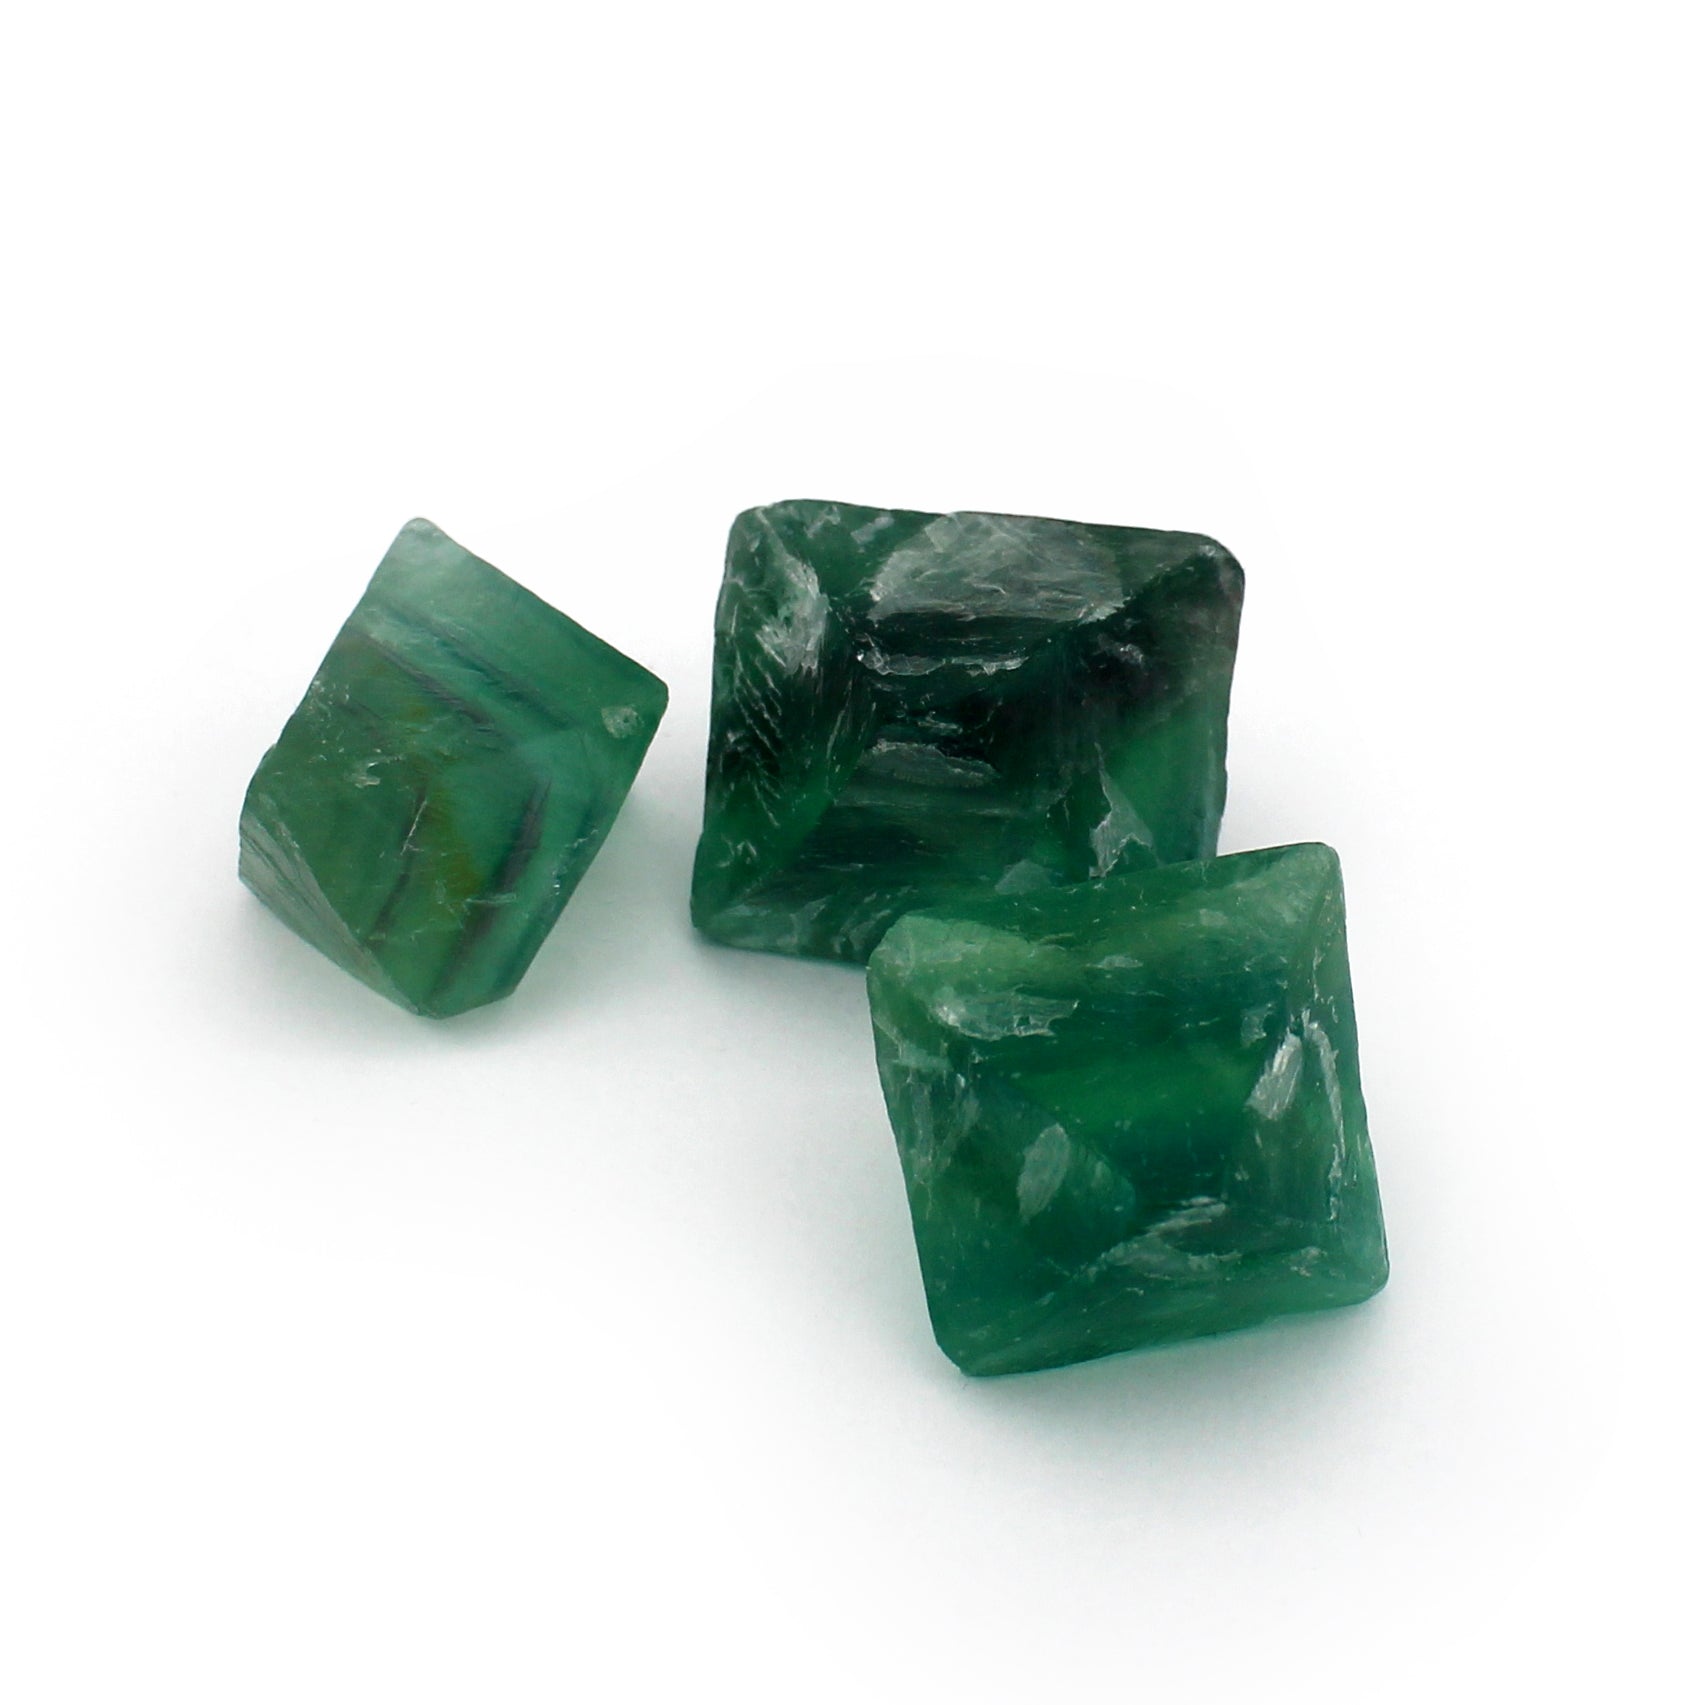 Fluorite - Green Octahedron $22